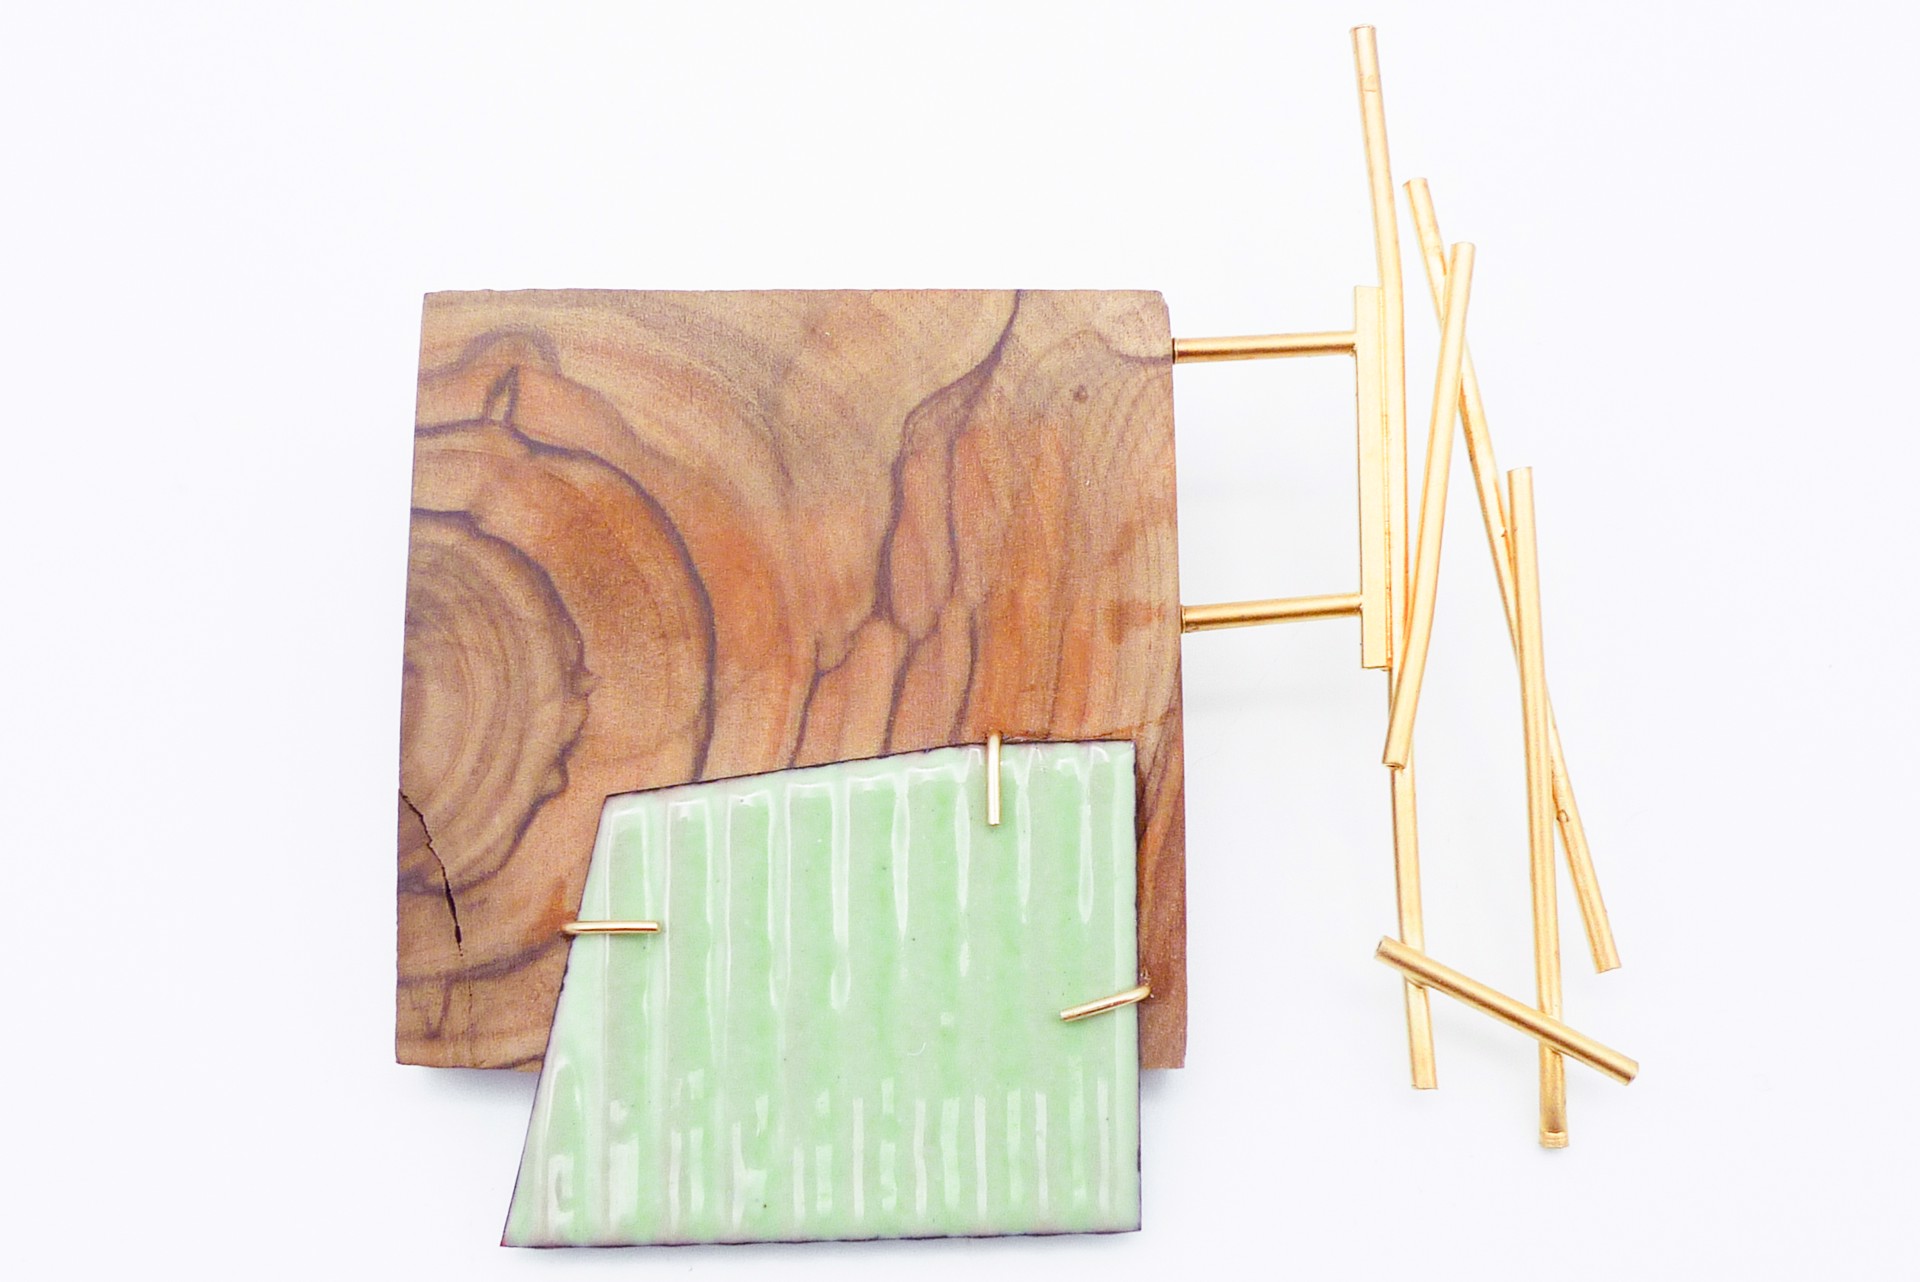 Bamboo Scaffold Brooch by Lauren Markley